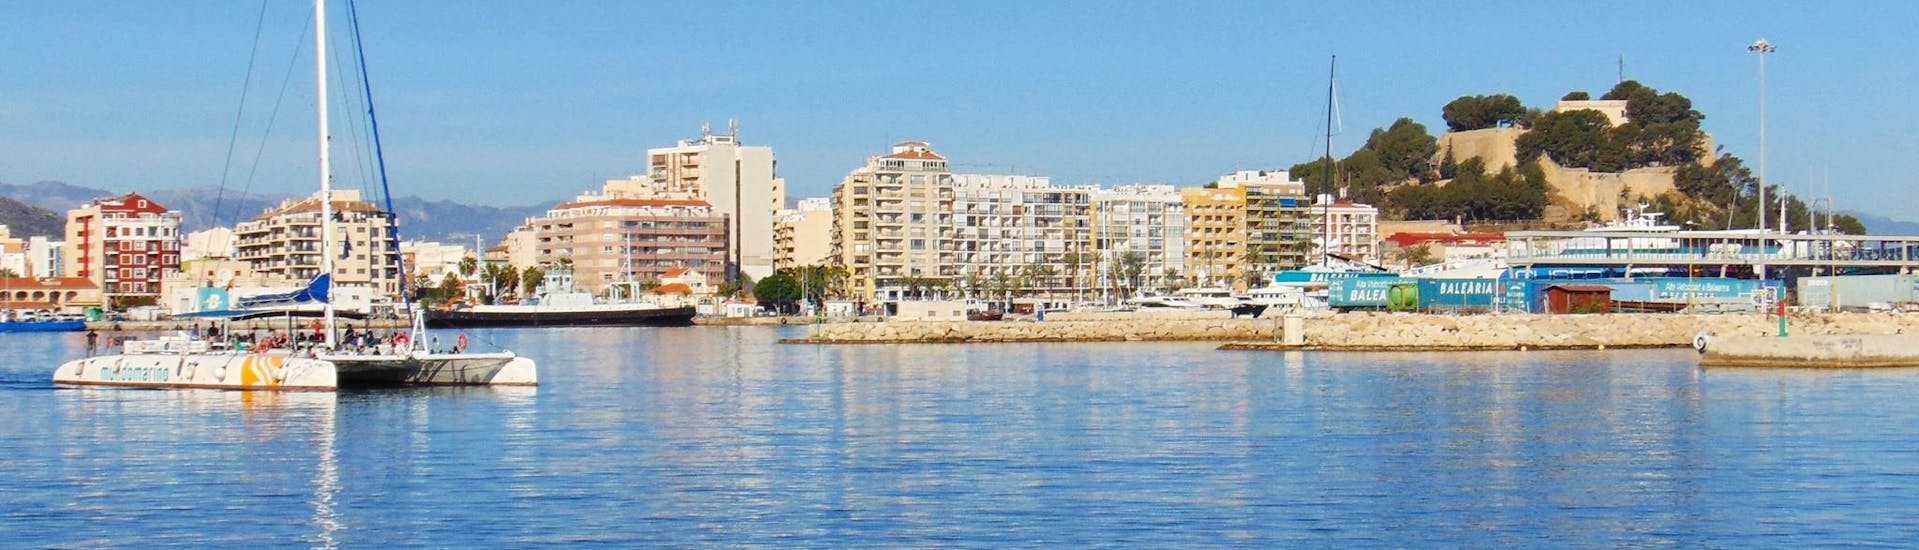 De elegante en moderne eco-zeilcatamaran vaart voor de prachtige haven van Malaga tijdens een boottocht van een hele dag vanuit Malaga langs de Costa del Sol met Mundo Marino Costa del Sol.